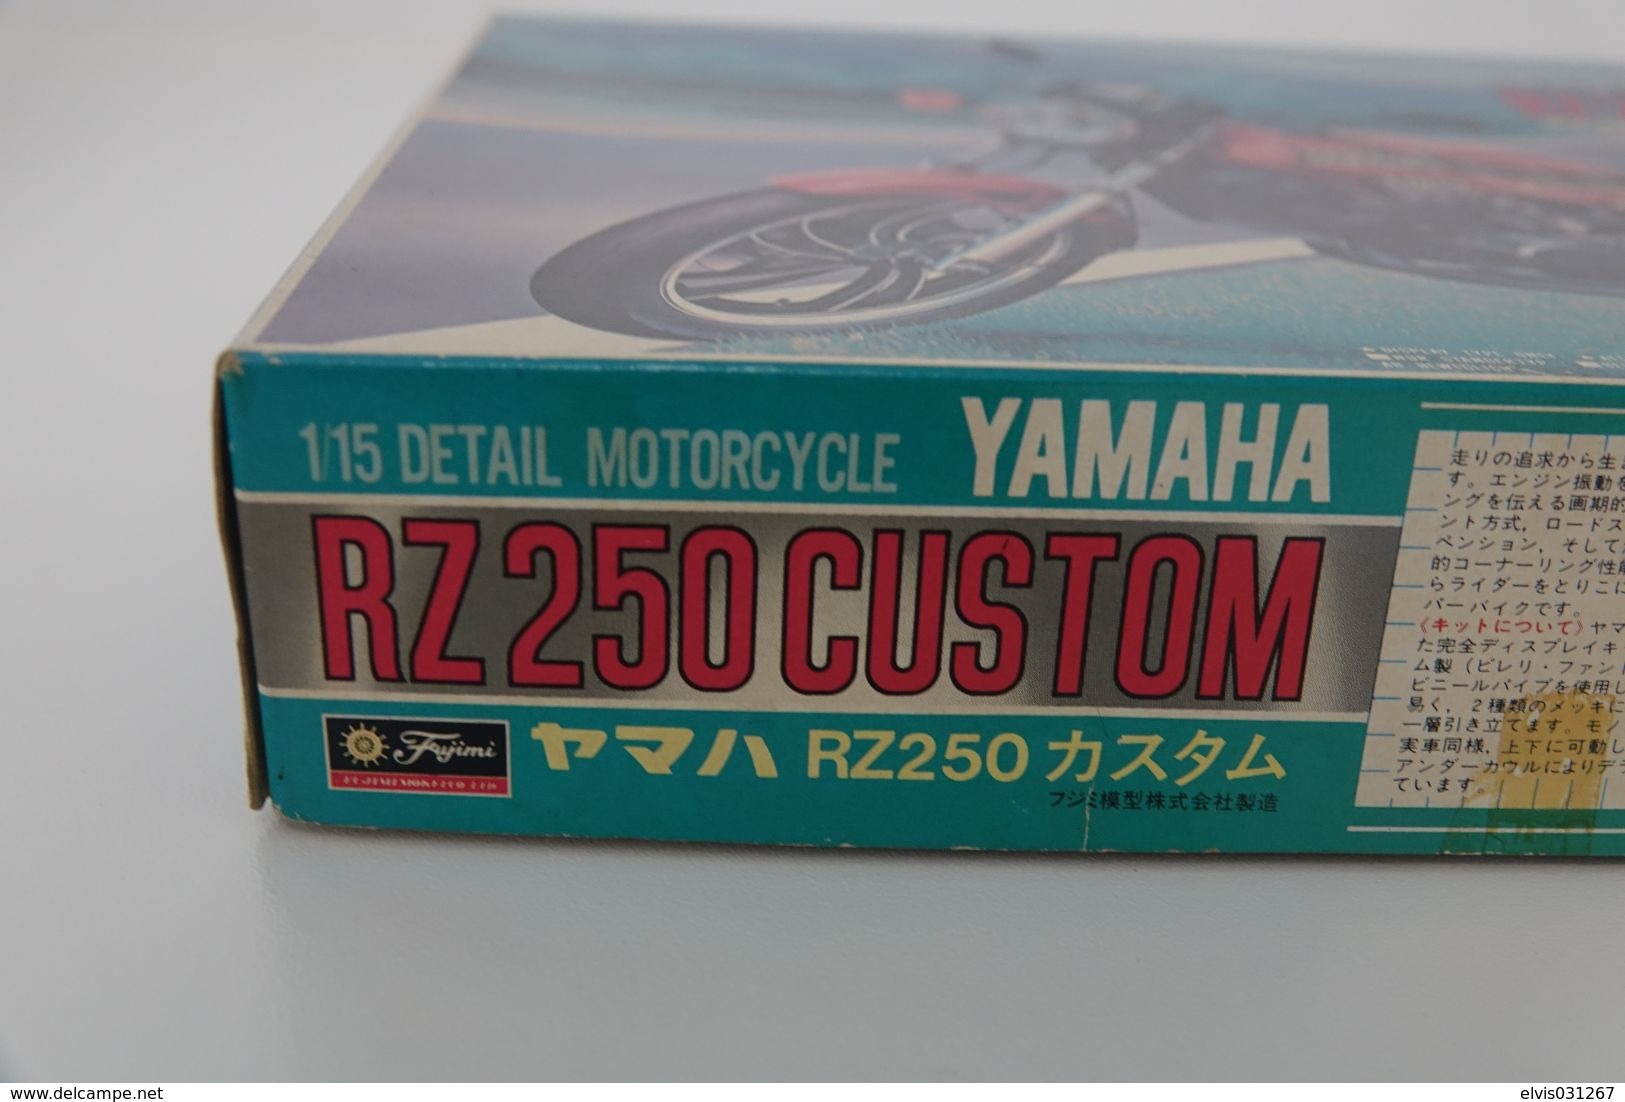 Vintage MODEL KIT : Fujimi - YAMAHA RA250 CUSTOM, Series 11 , Sealed NOS MIB, Scale 1/15, Vintage 1980's - Echelle 1:32